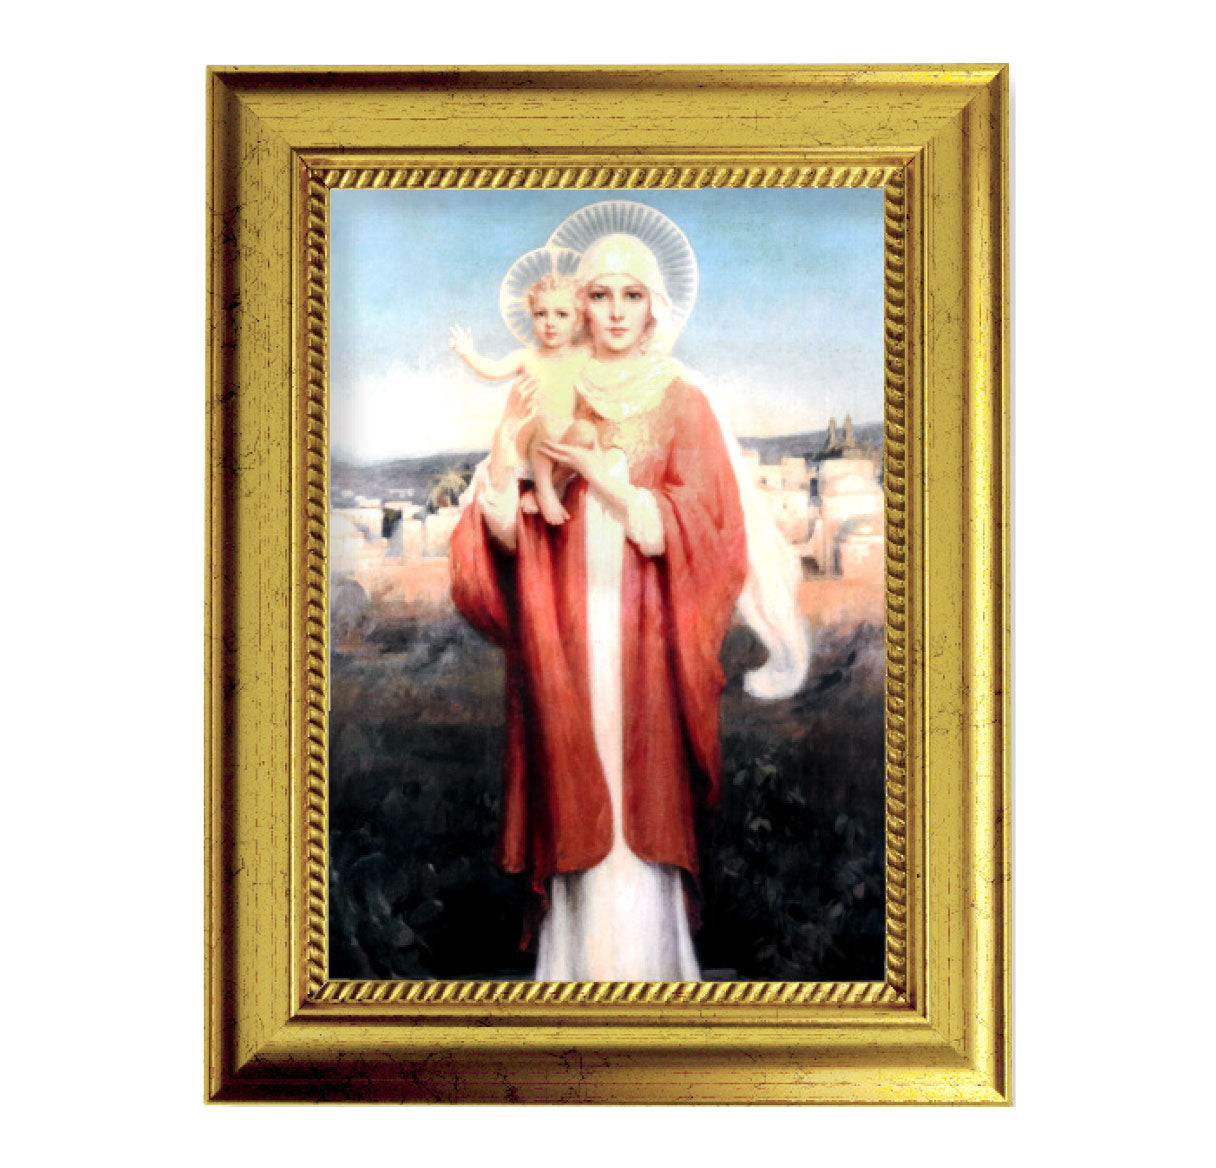 Our Lady of Jerusalem Gold-Leaf Framed Art